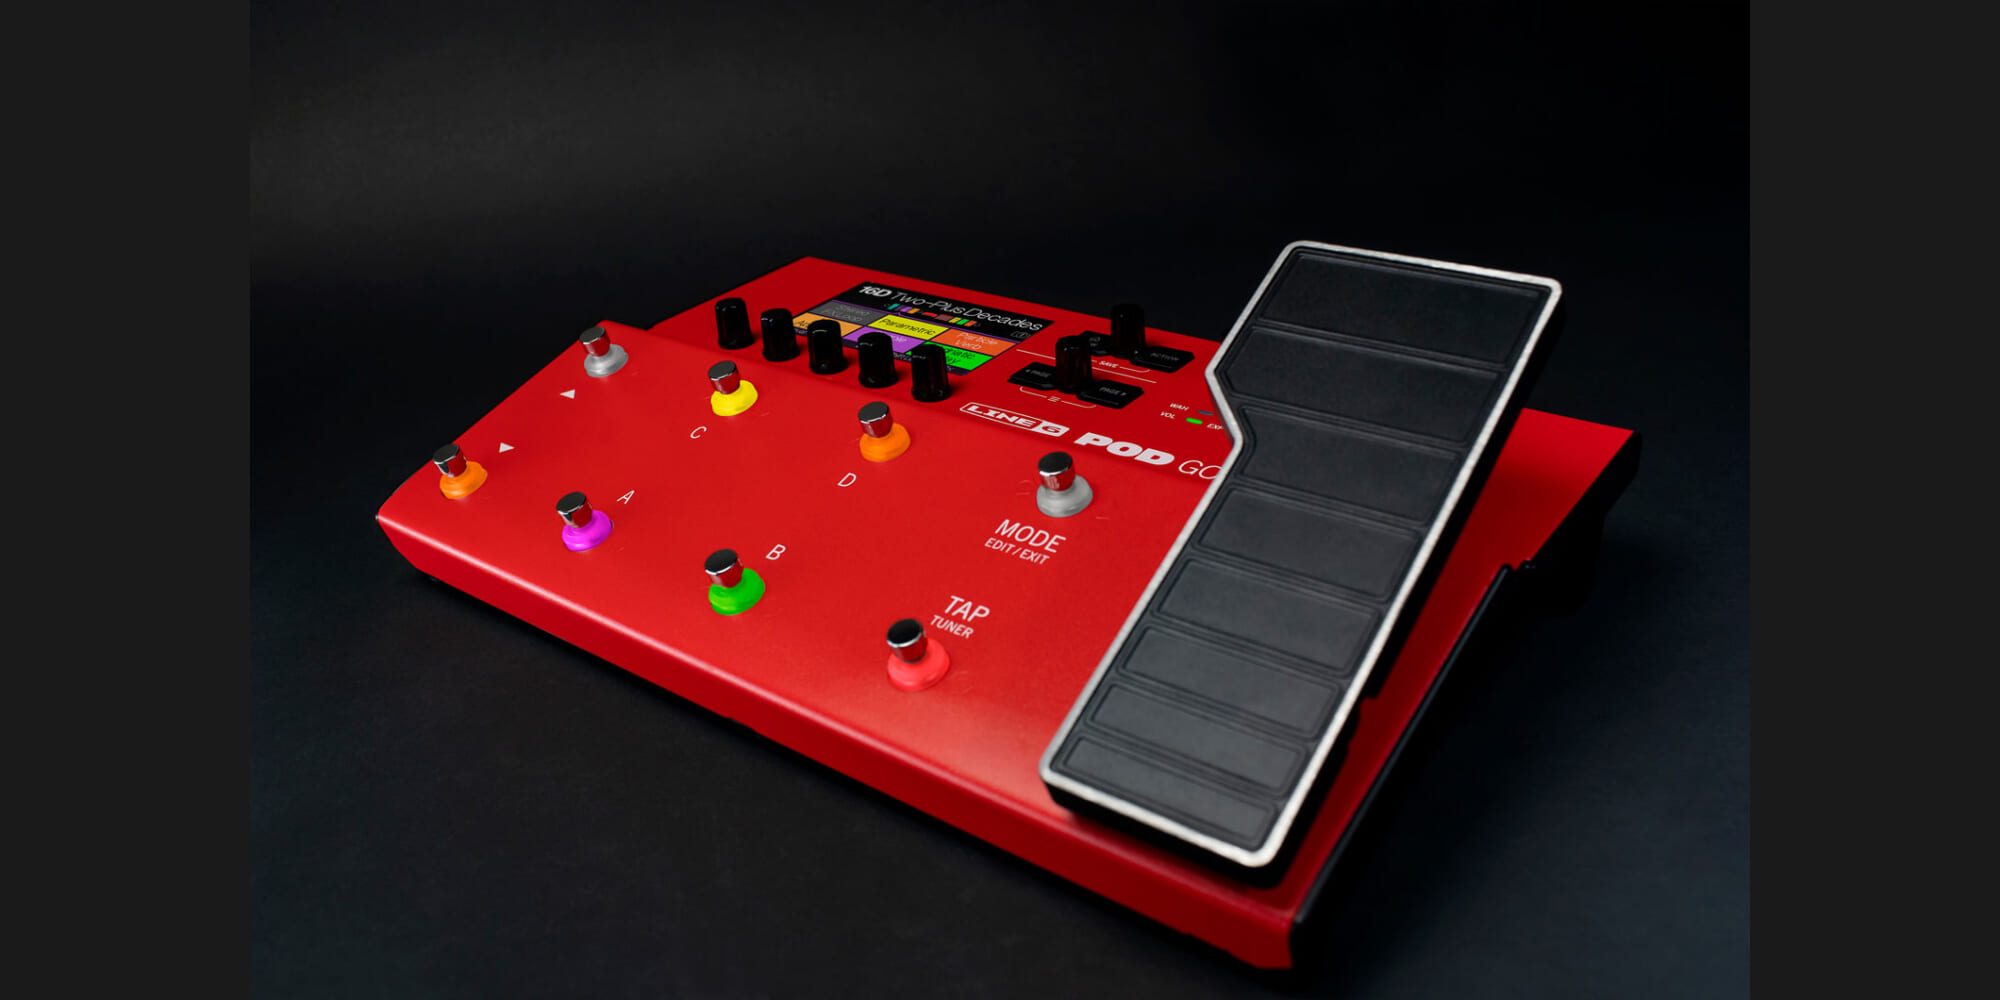 Line 6、特別仕様の赤い筐体を持つ限定モデル“POD Go Limited Edition 